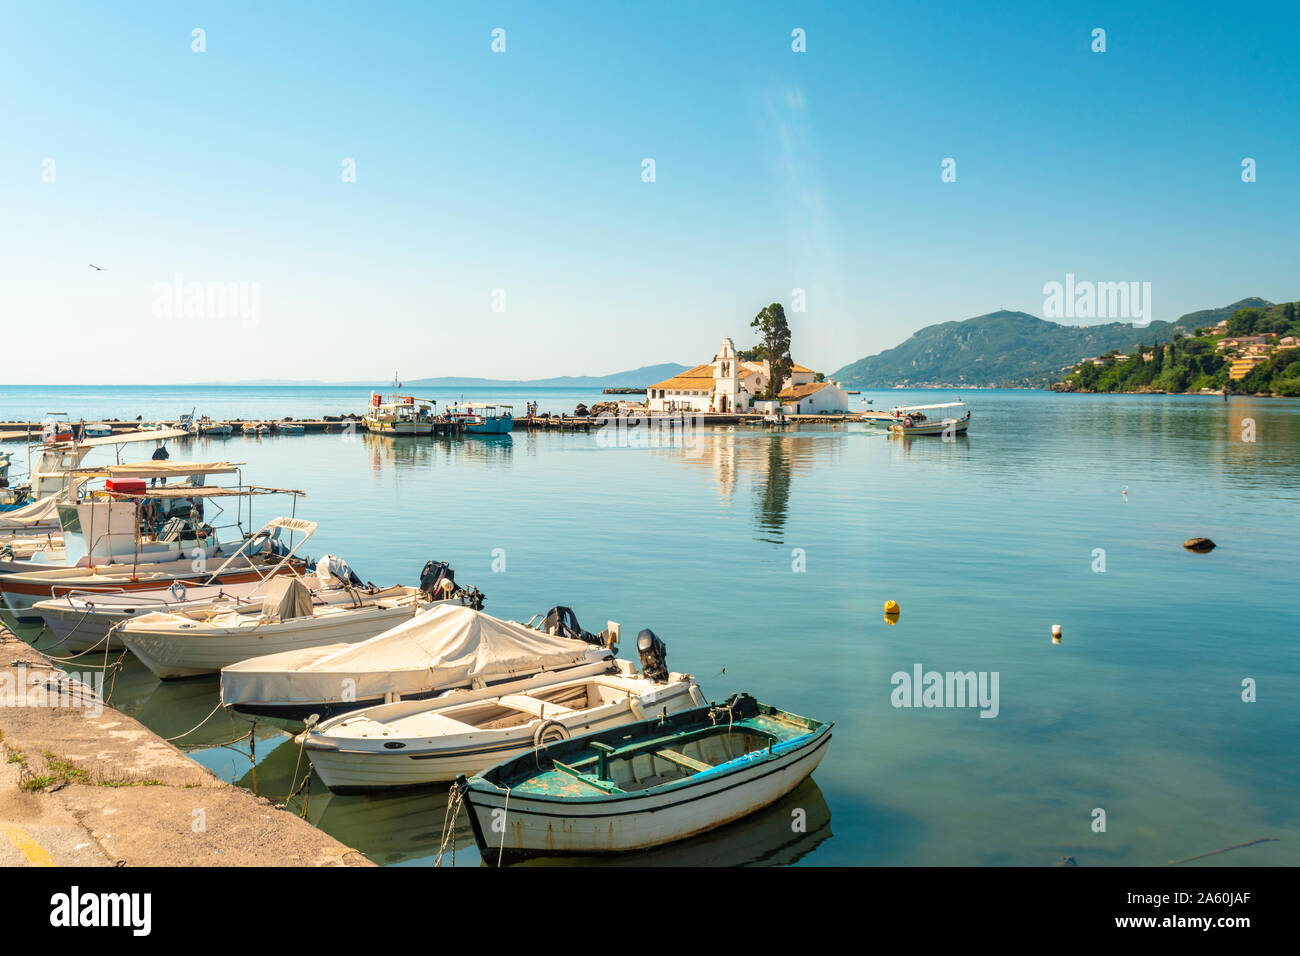 Boats moored at marina against sky at Corfu, Greece Stock Photo